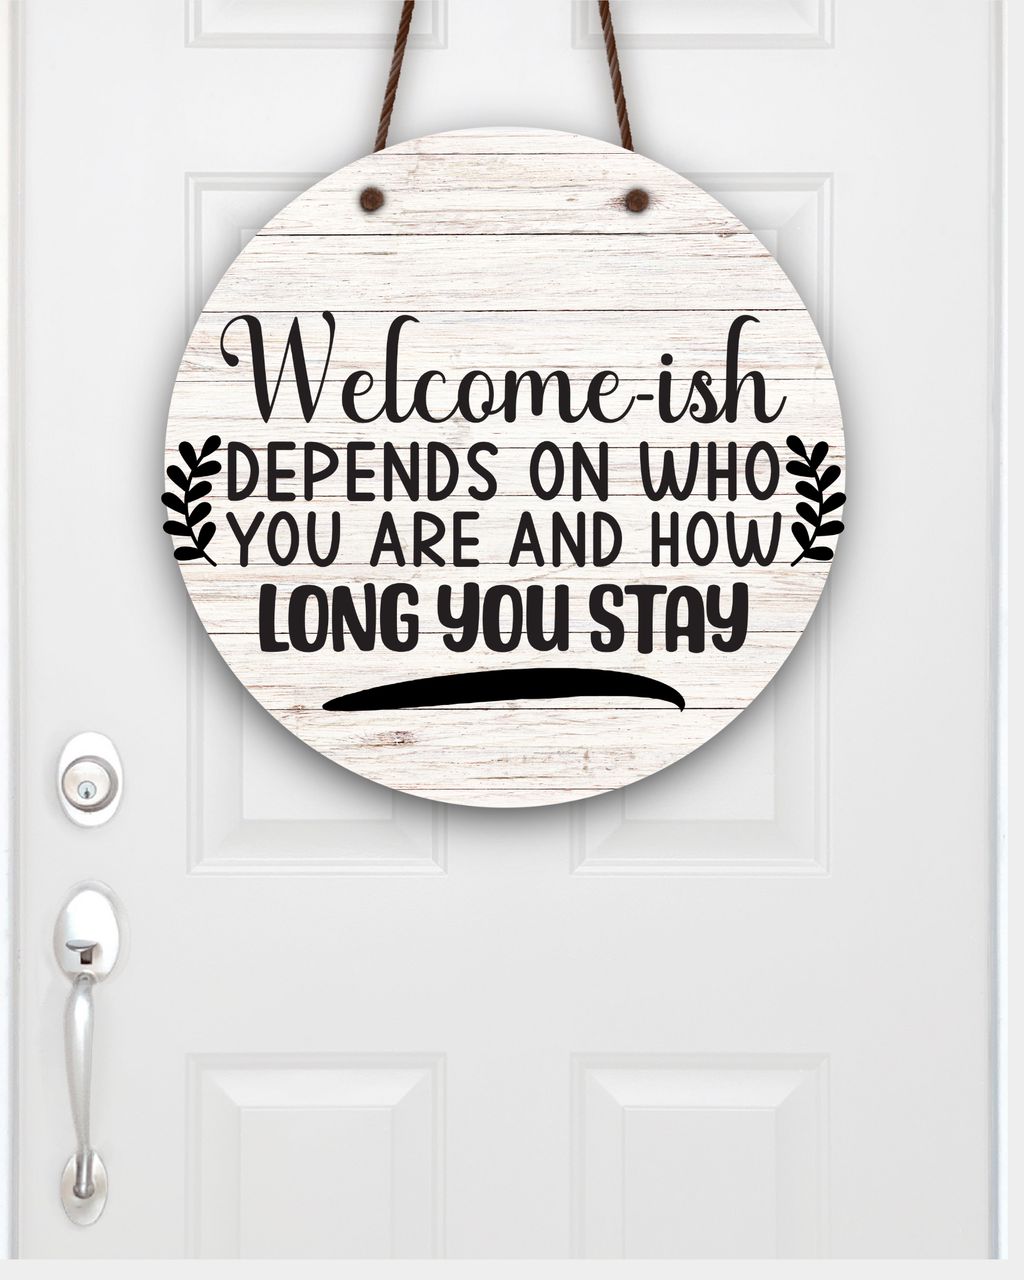 Welcome-ish on white shiplap Door Hanger/Sign